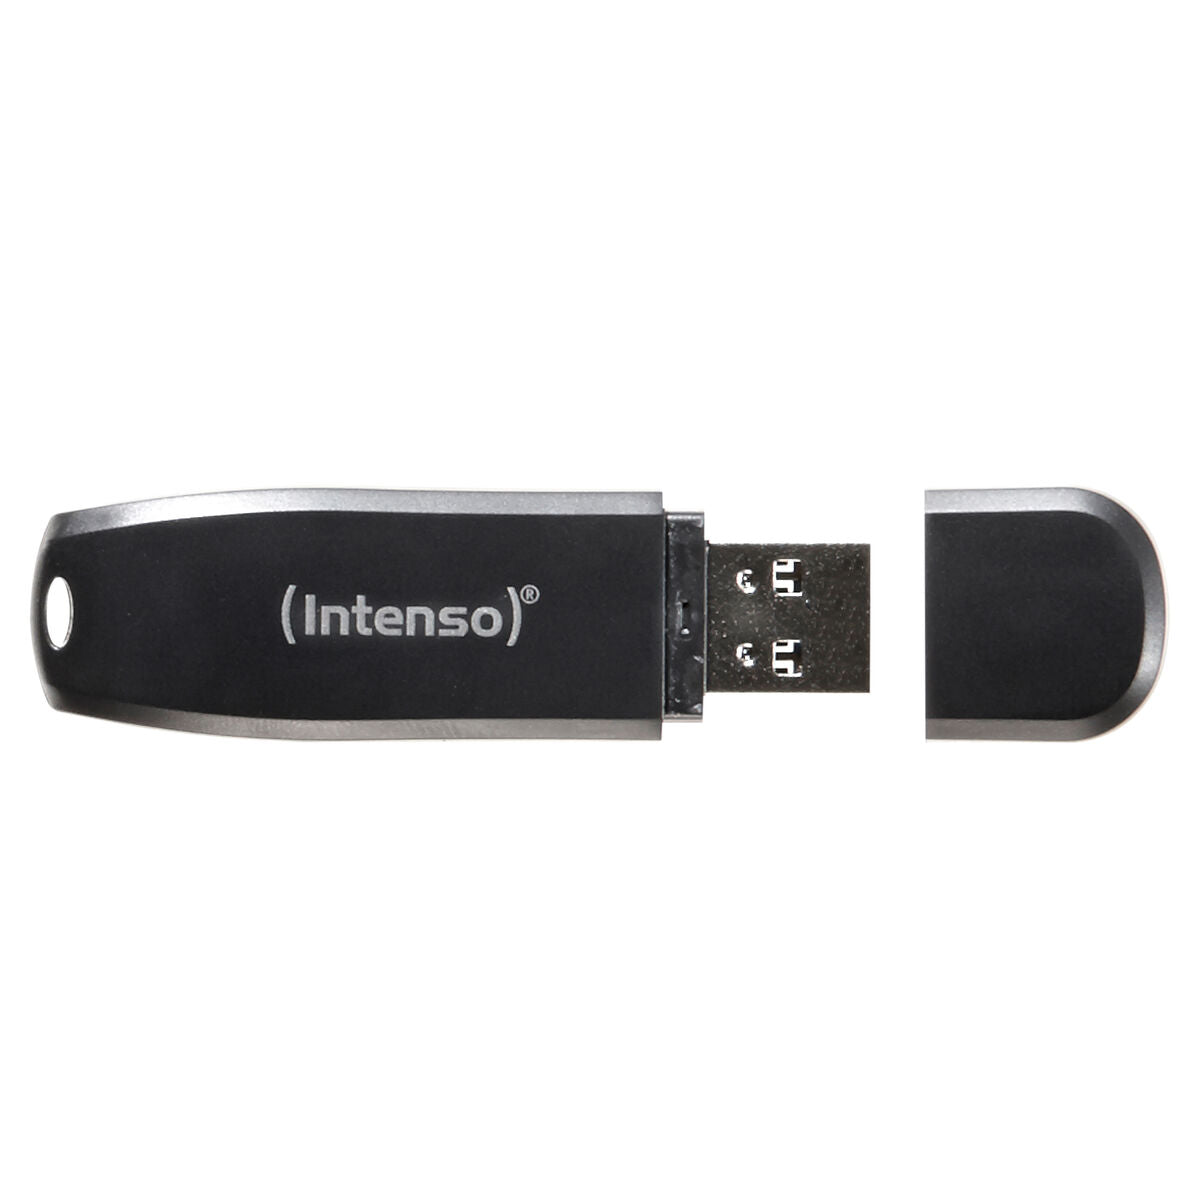 USB stick INTENSO 3533480 USB 3.0 32 GB Black 32 GB DDR3 SDRAM